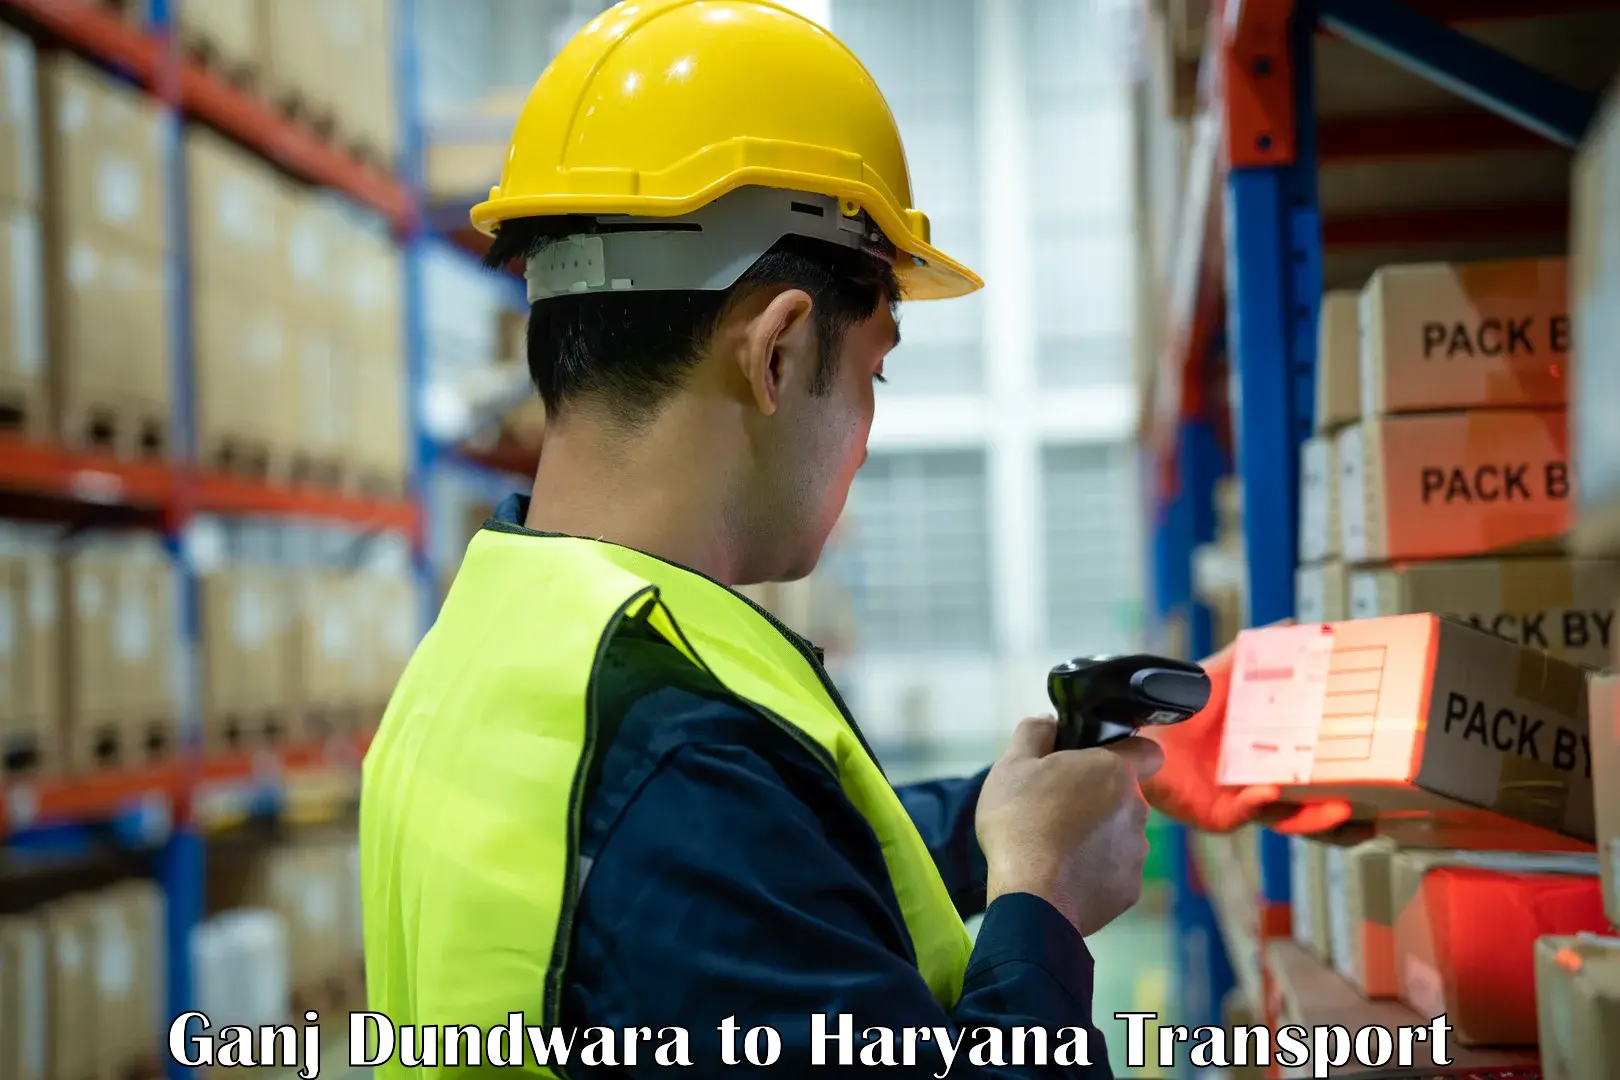 Luggage transport services Ganj Dundwara to NCR Haryana